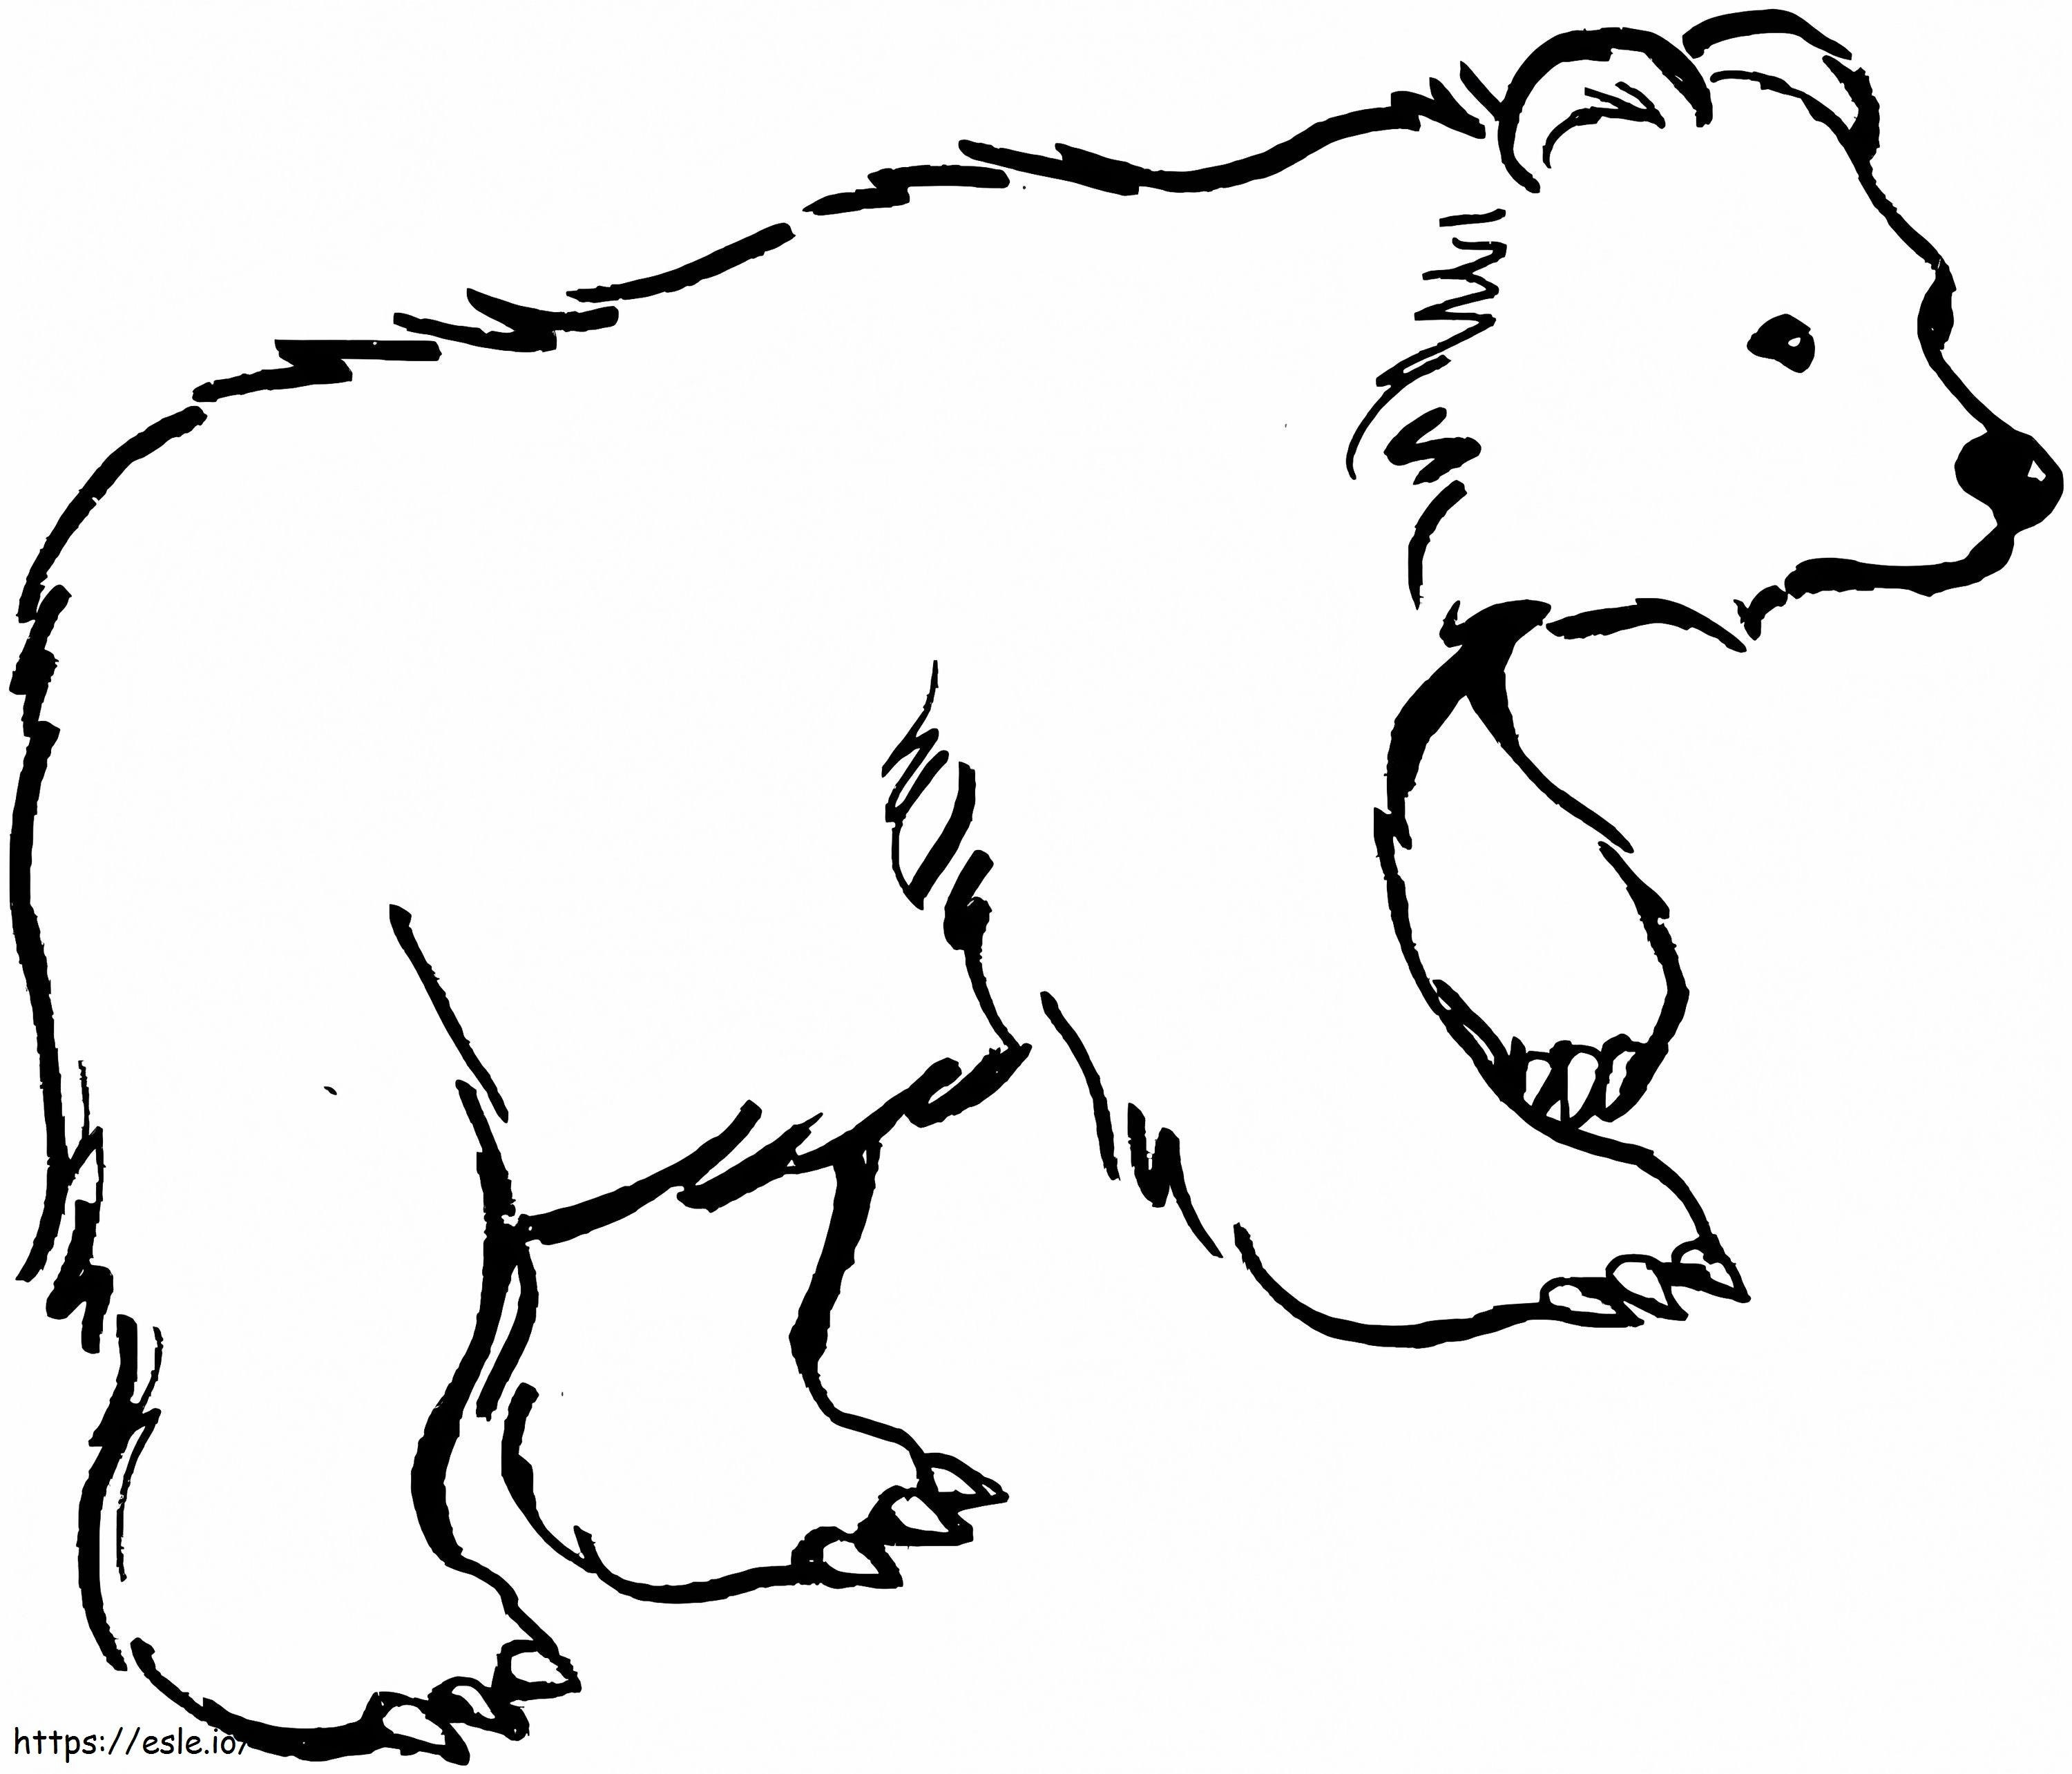 Niedźwiedź brunatny 2 kolorowanka